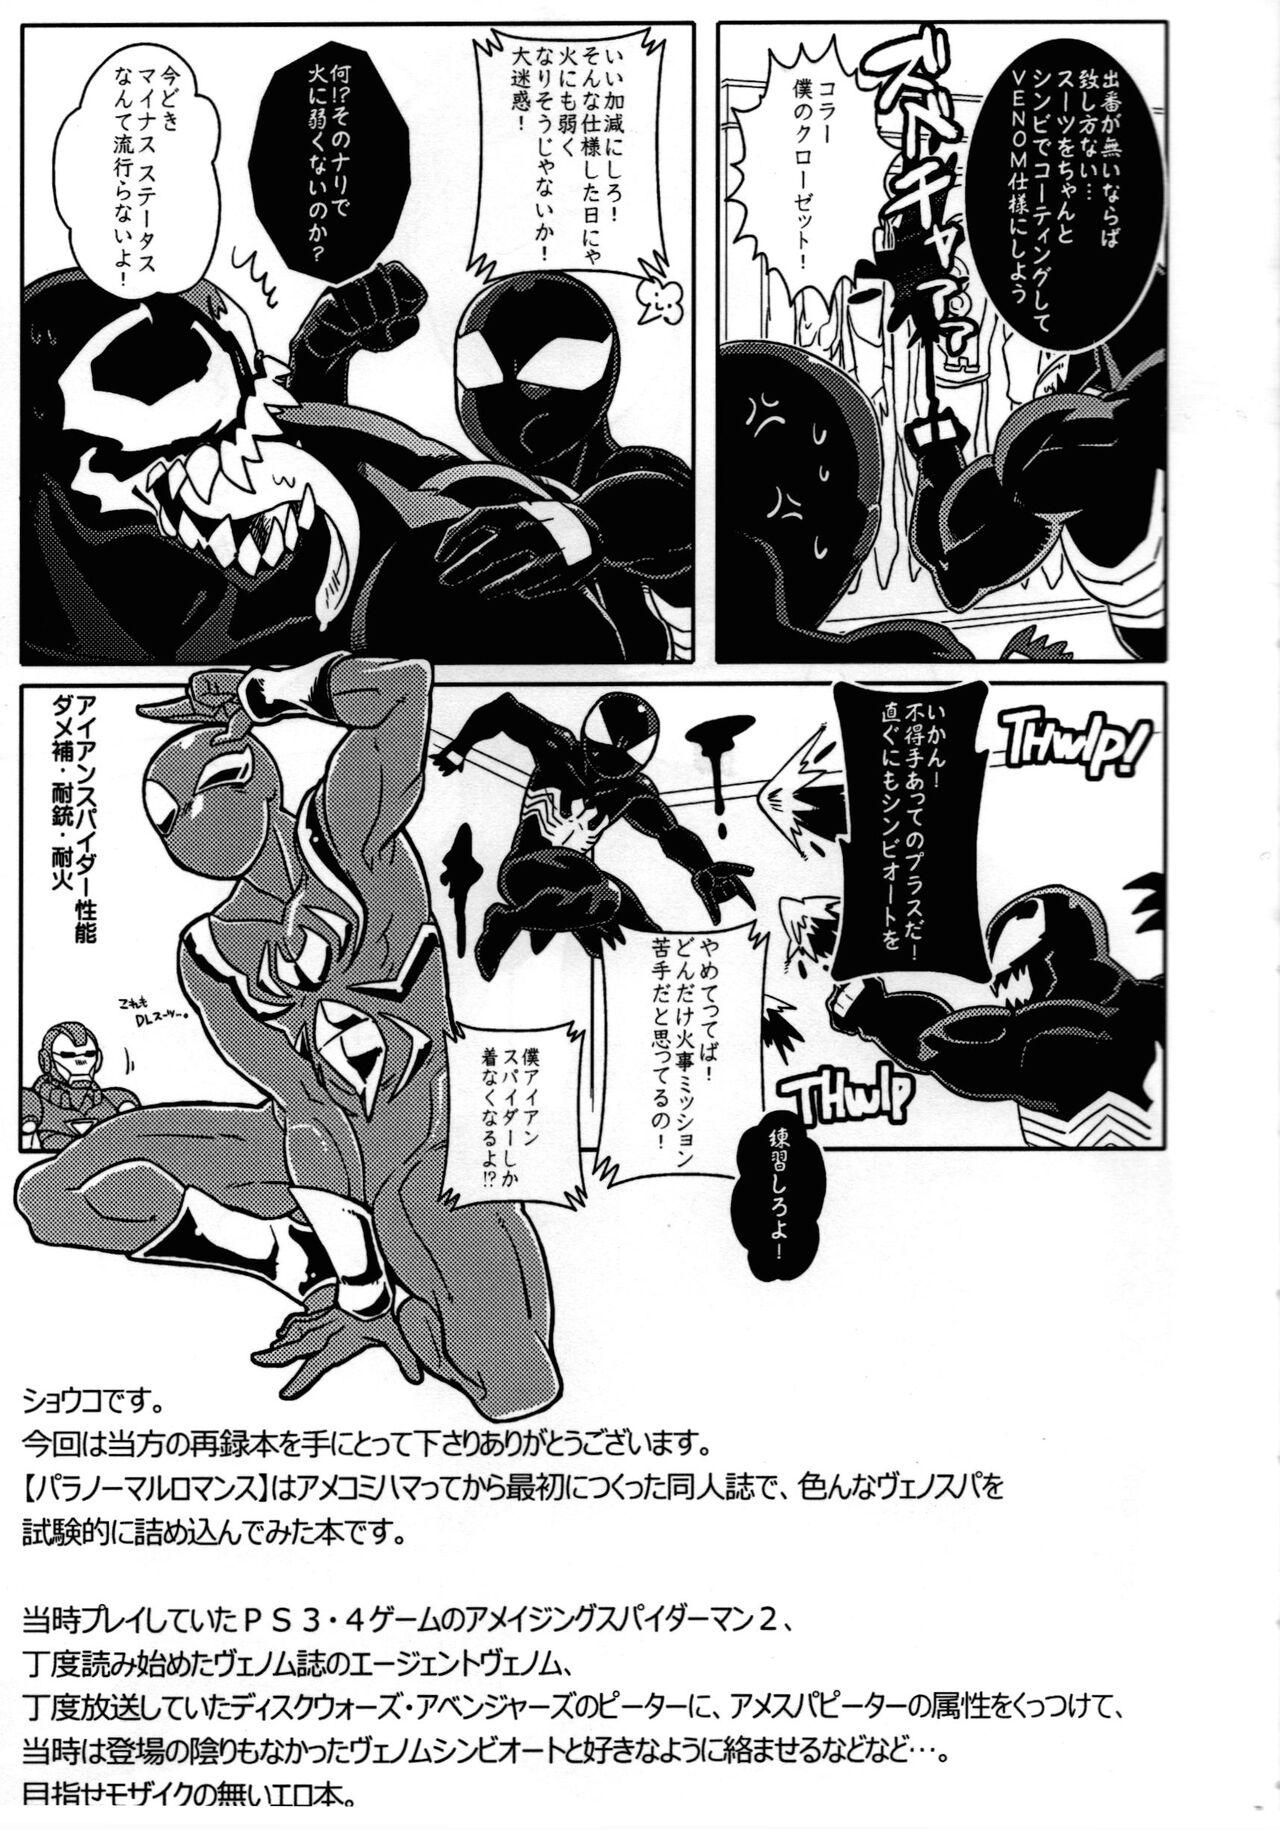 Step Spider‐Man REMIX - Spider man Office - Page 7